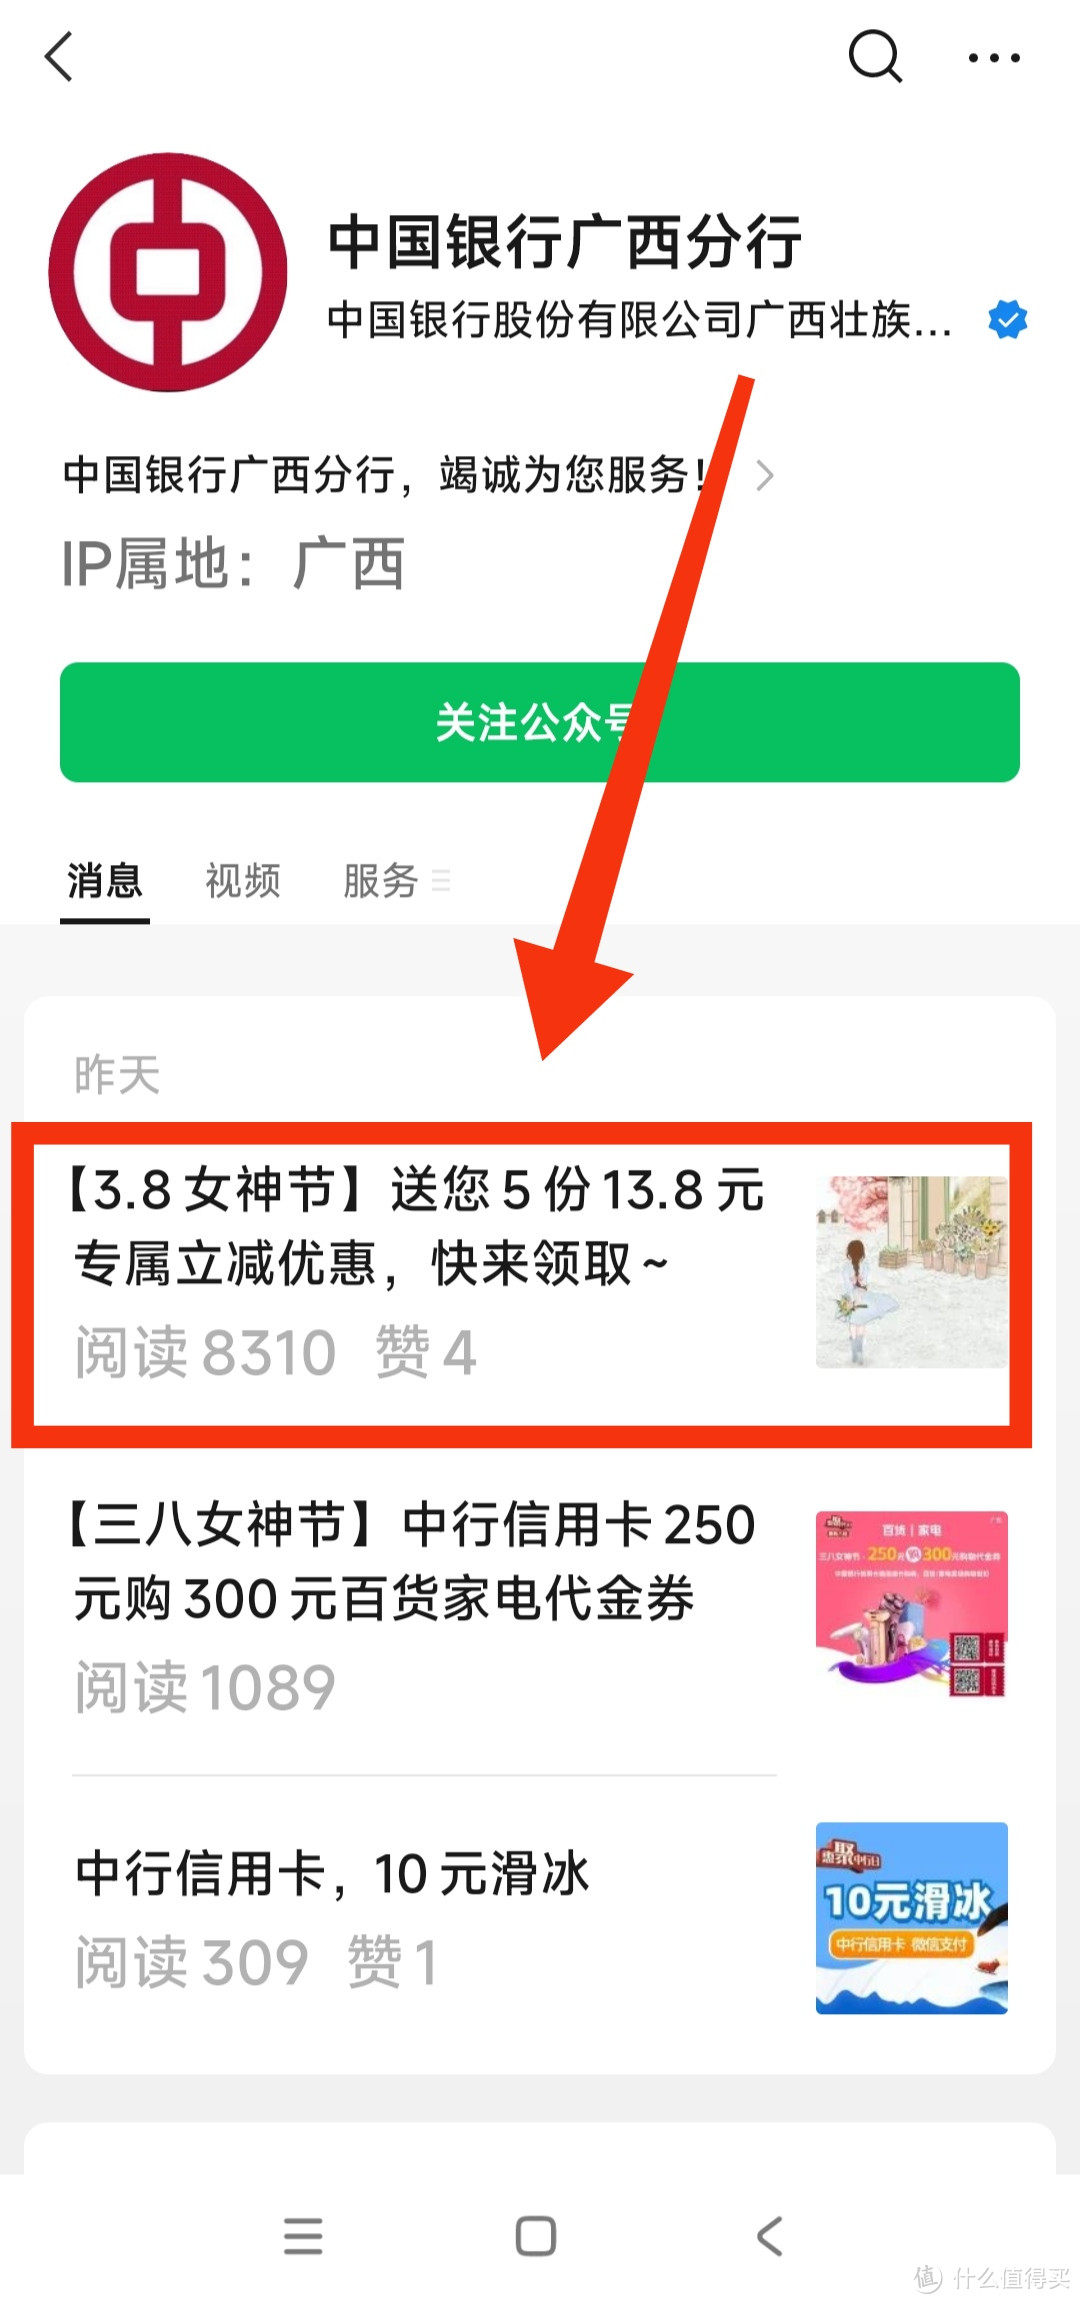 中国银行上海用户福利！0.1元领郁金香或绿植～31号截止～集美们行动起来～